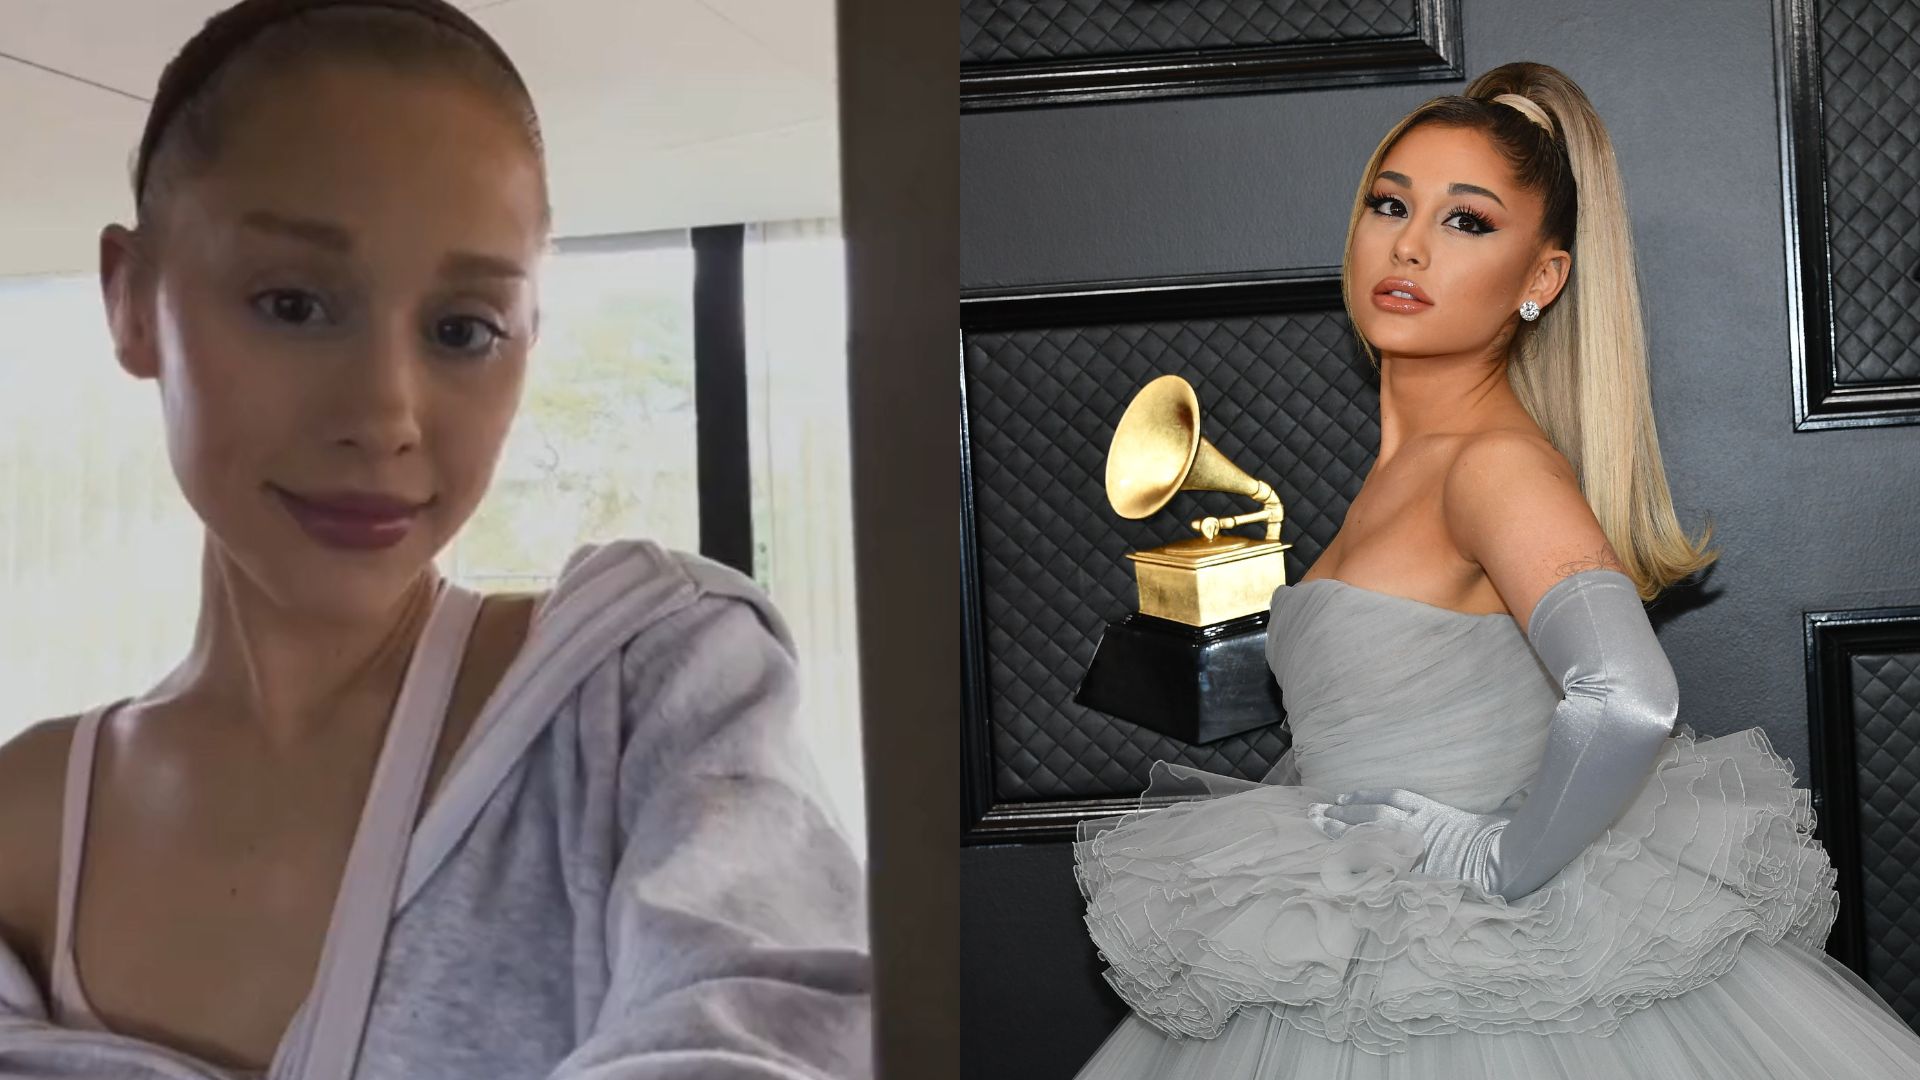 Ariana Grande rebate críticas ao seu corpo após fotos e desabafa sobre comparações: “Estava no ponto mais baixo da minha vida”